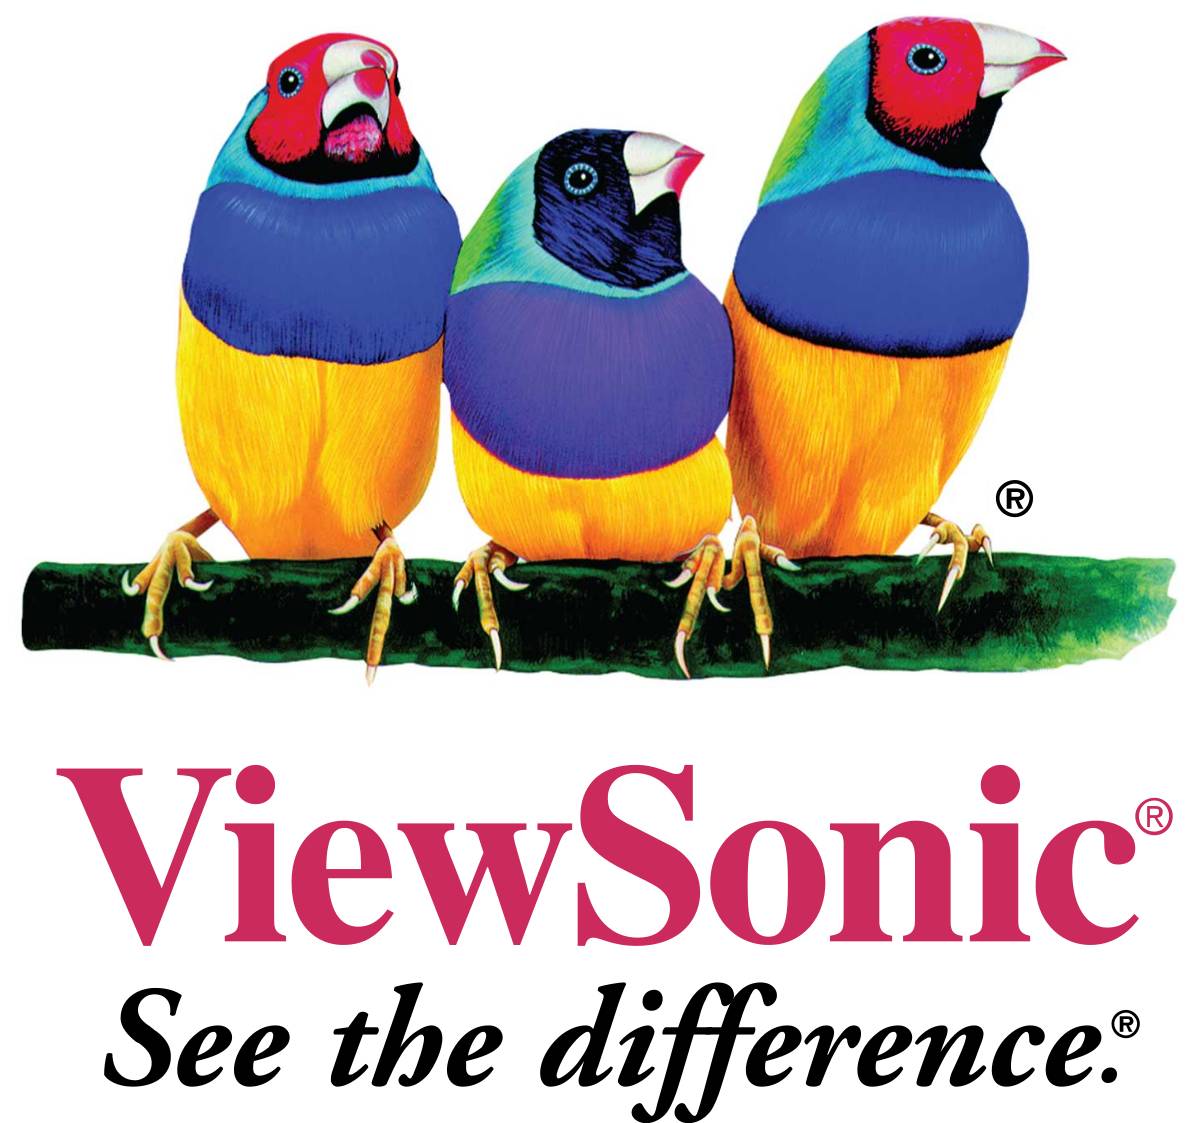 Viewsonic_logo.svg